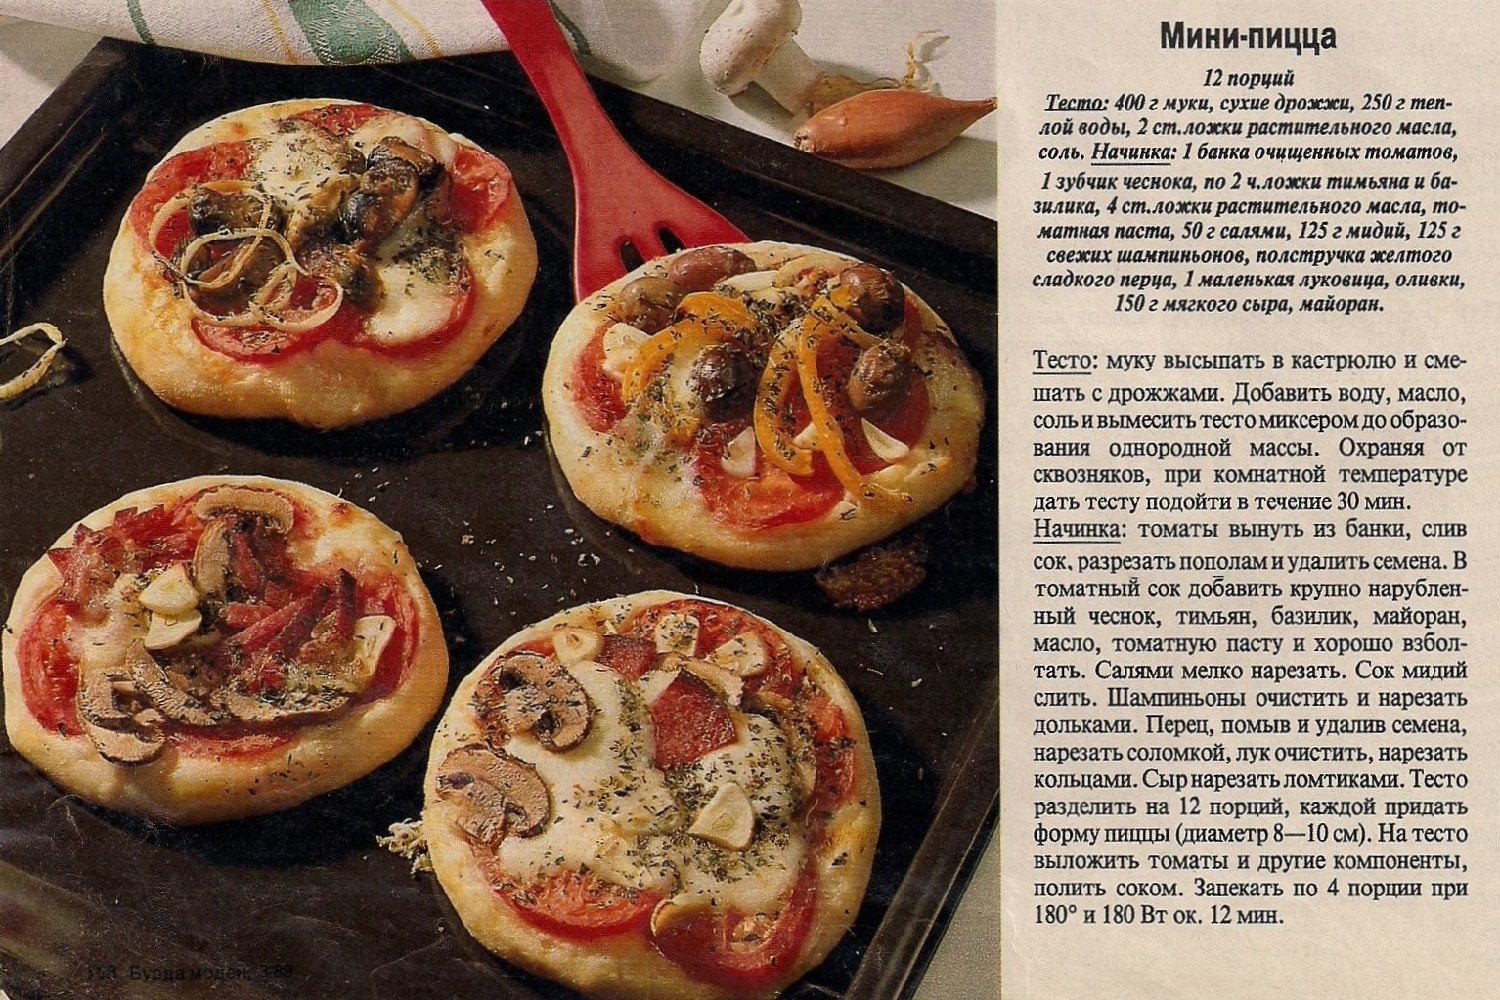 хороший рецепт пиццы из дрожжевого теста фото 91